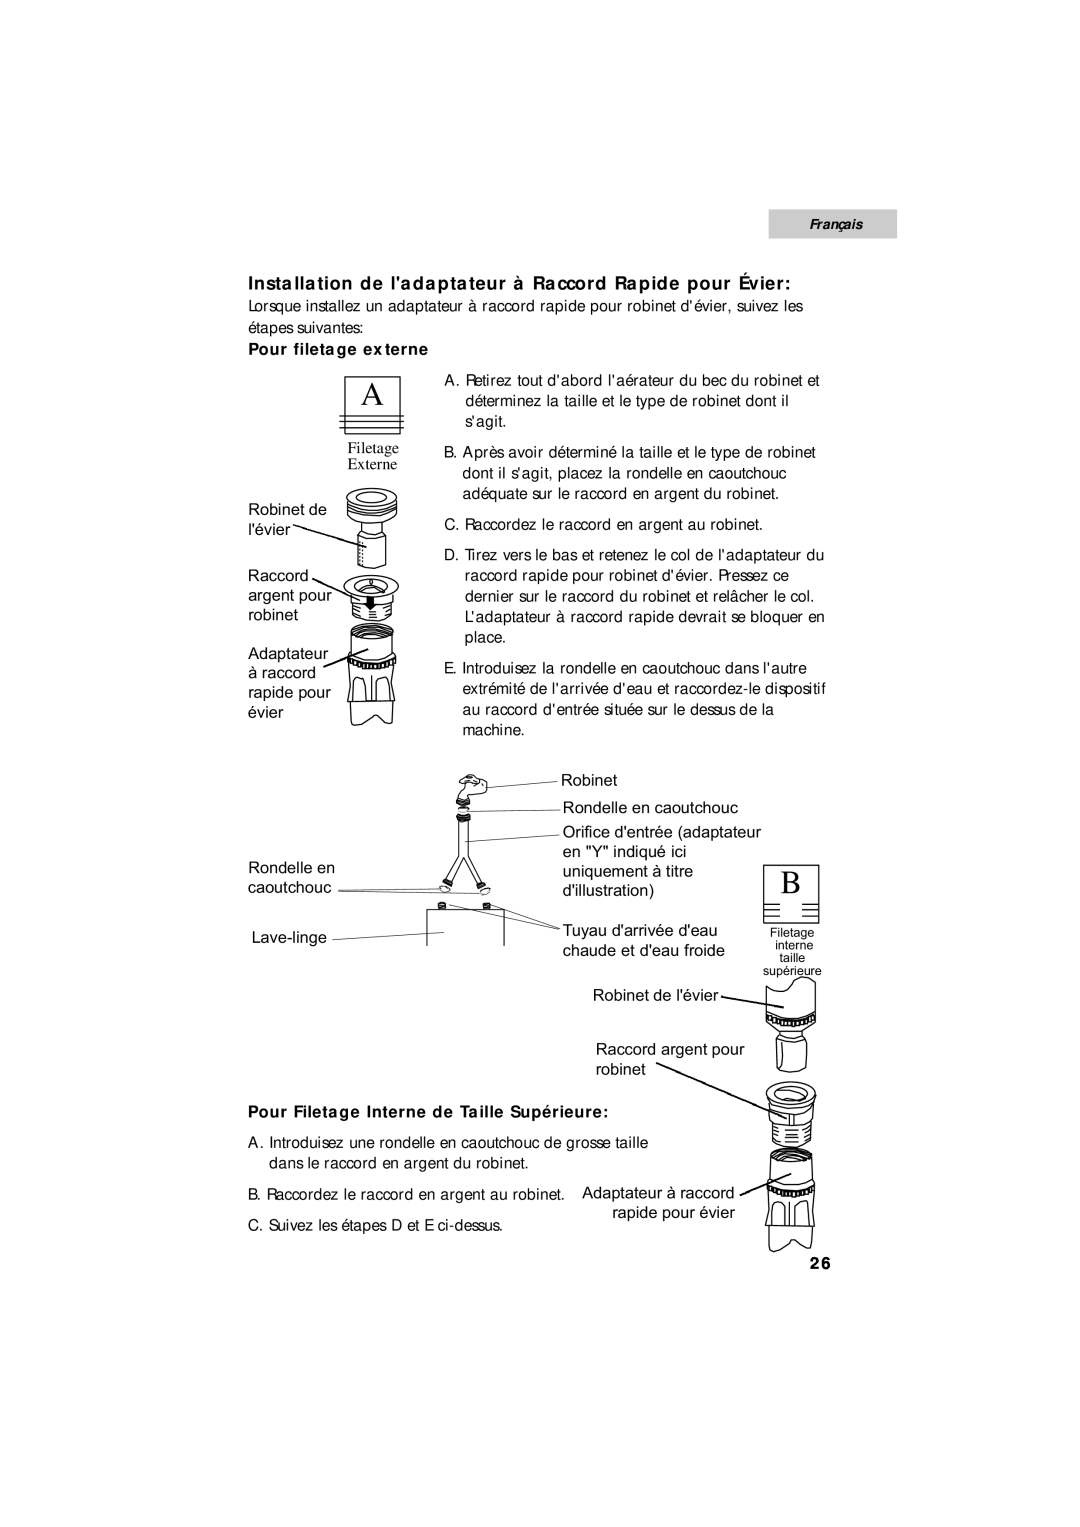 Summit SPW1200P user manual Installation de ladaptateur à Raccord Rapide pour Évier, Français, Pour filetage externe 